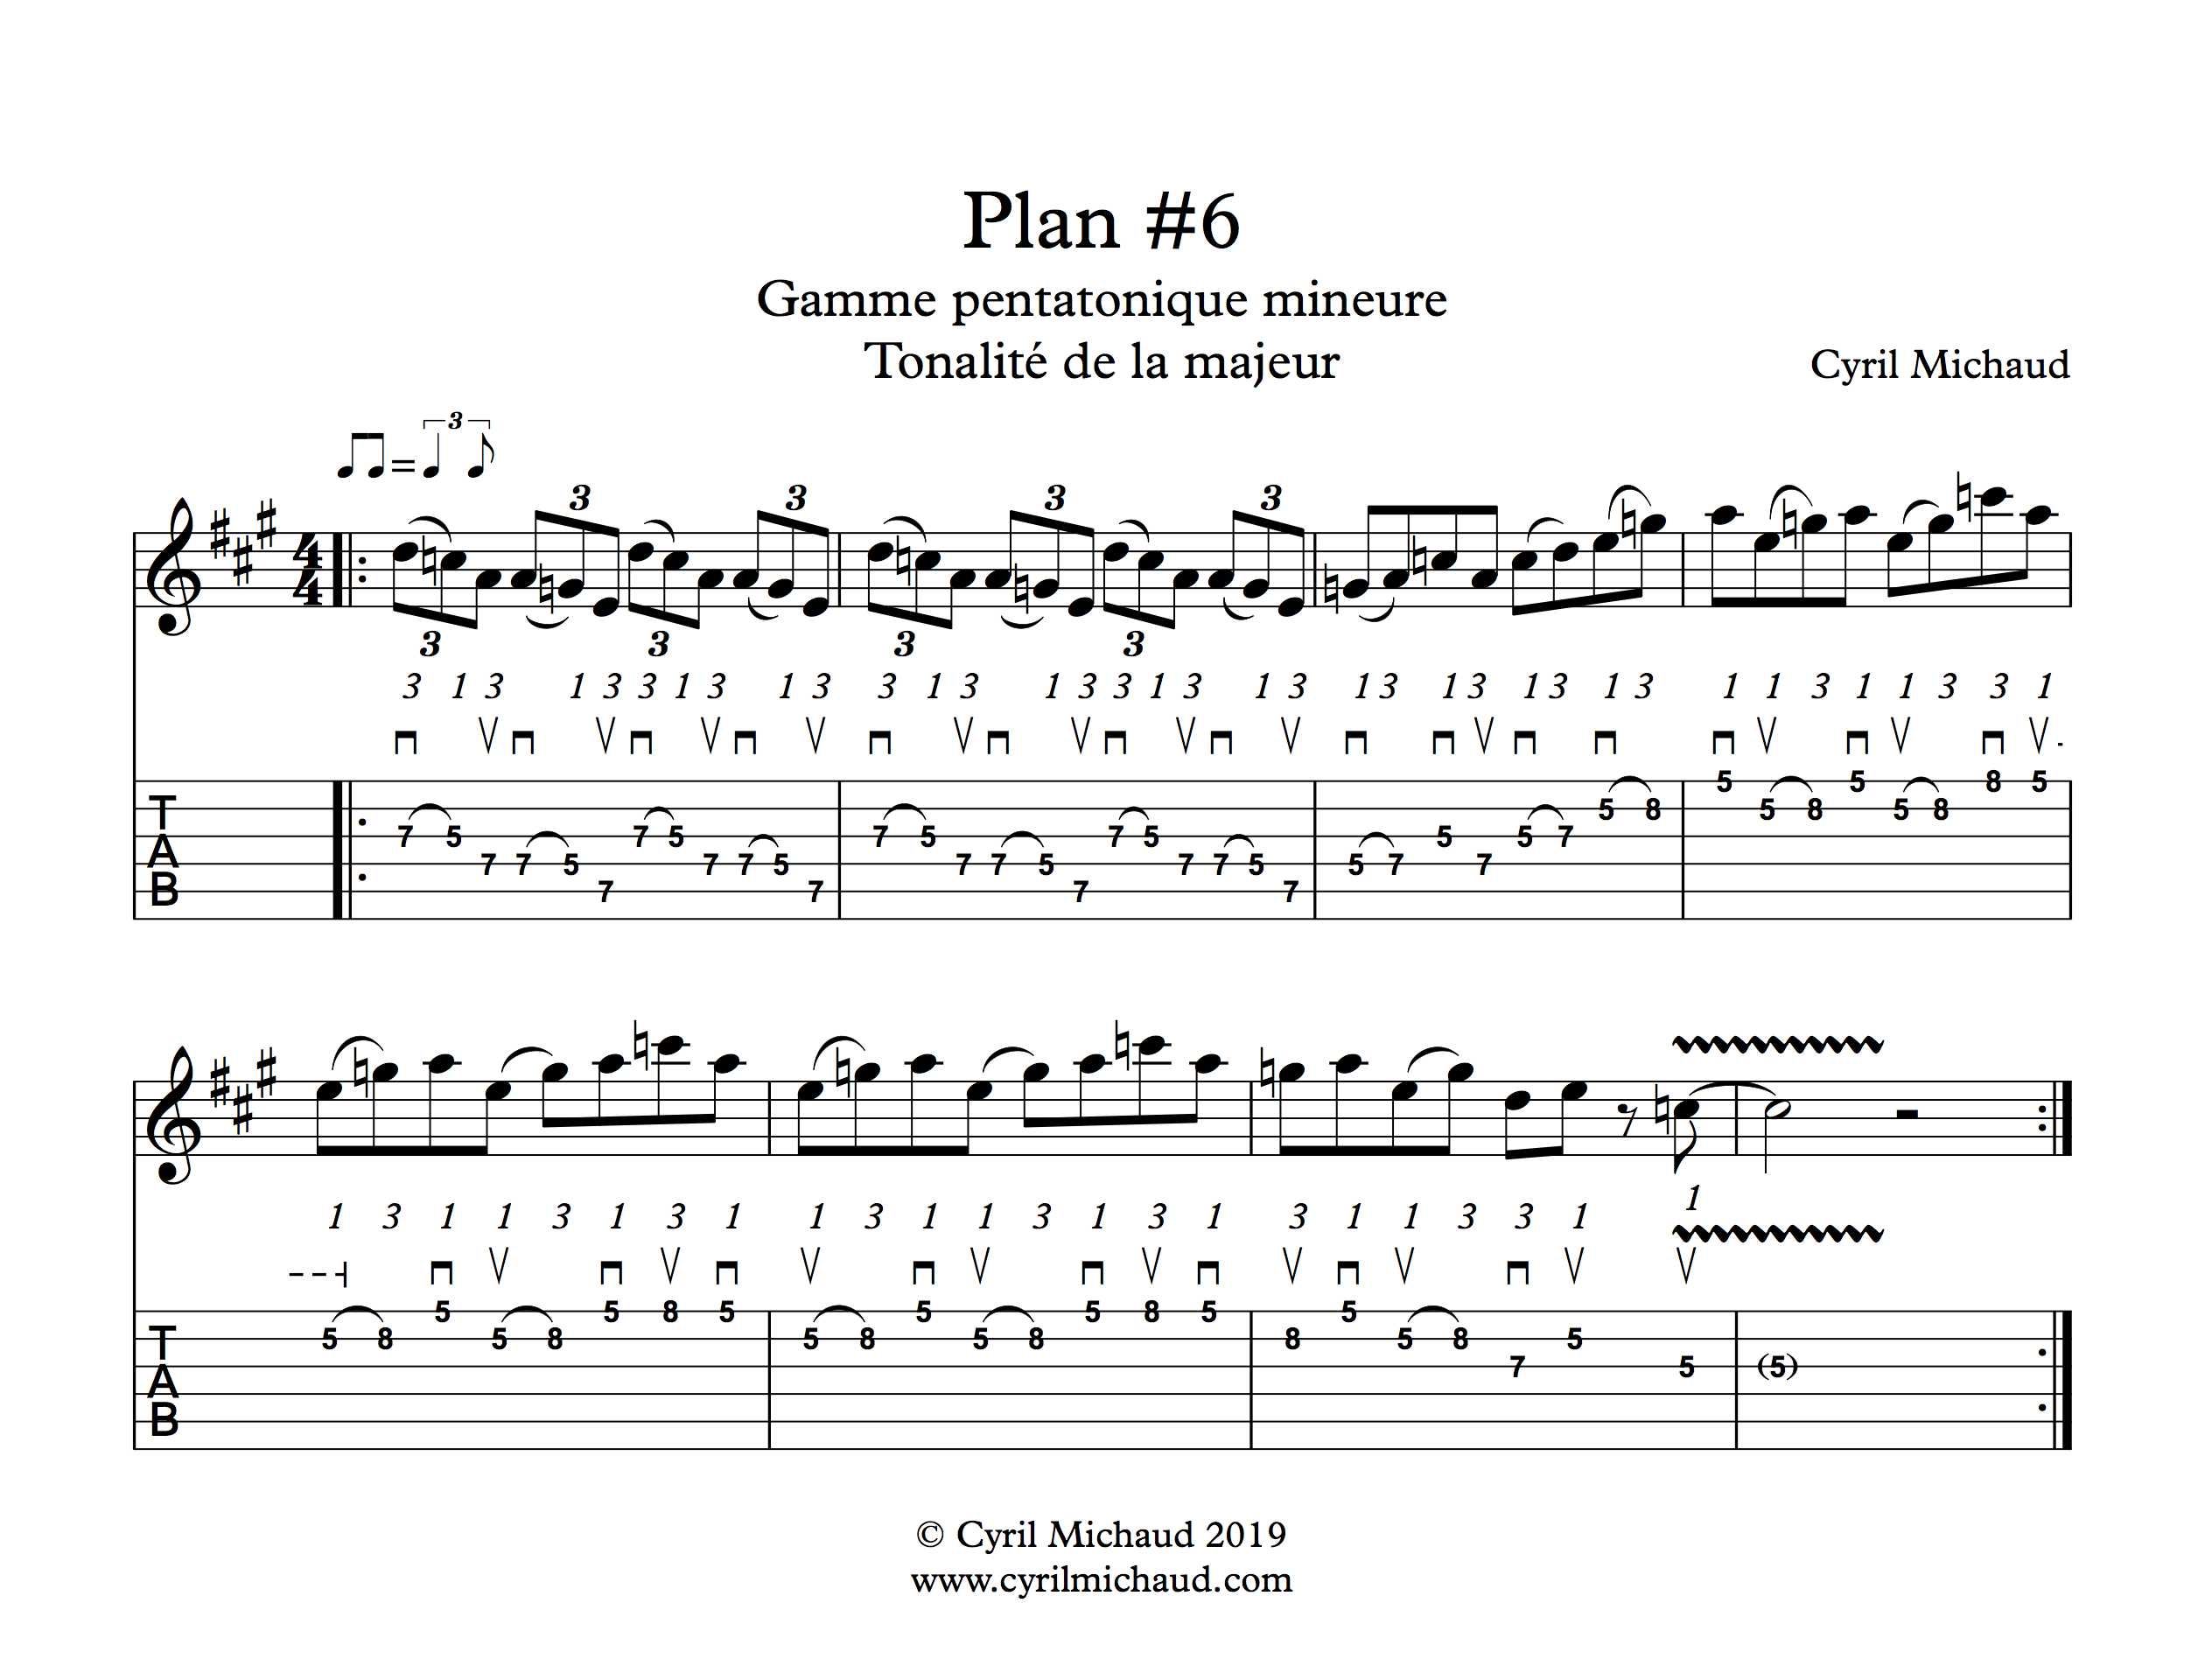 Plan blues sur la gamme pentatonique mineure (6)